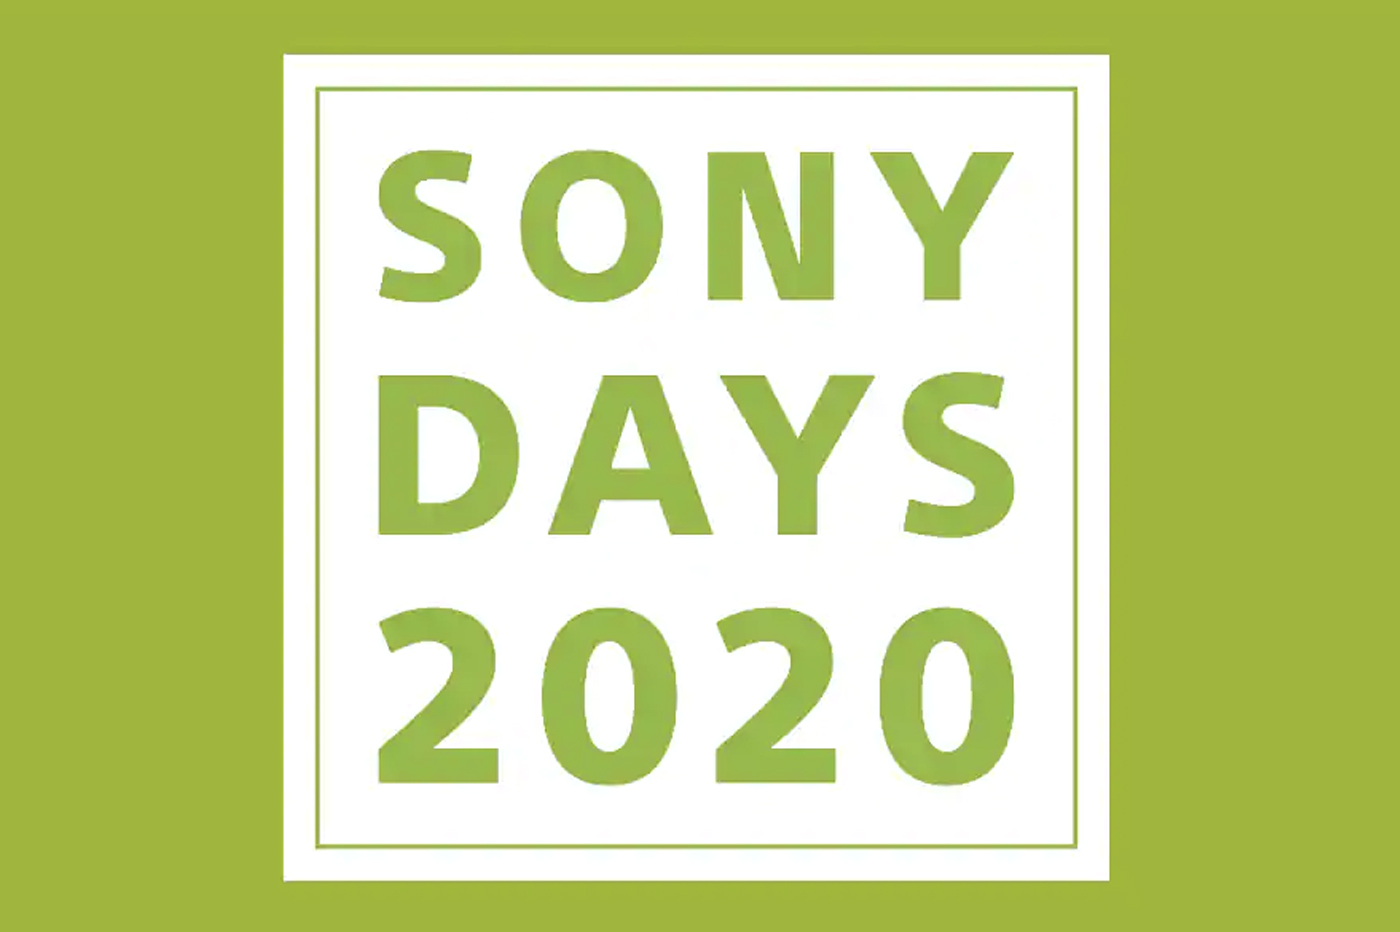 Sony Days 2020